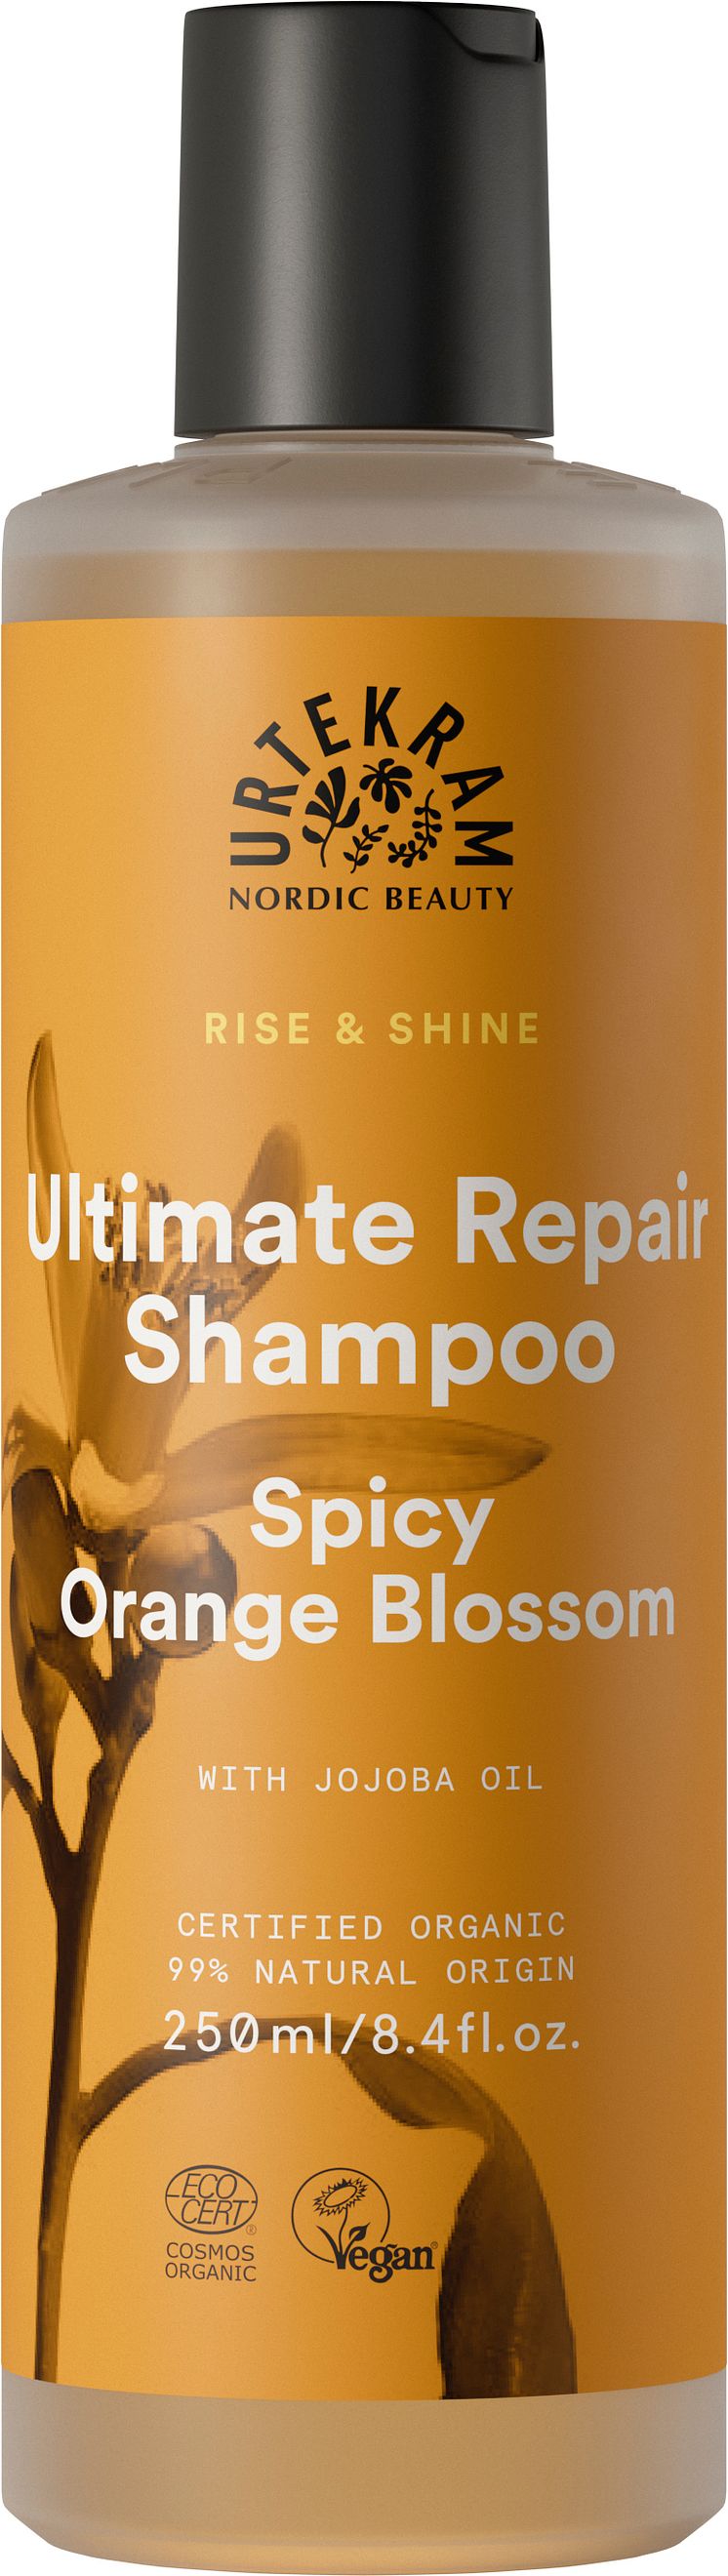 Urterkam Rise & Shine Shampoo